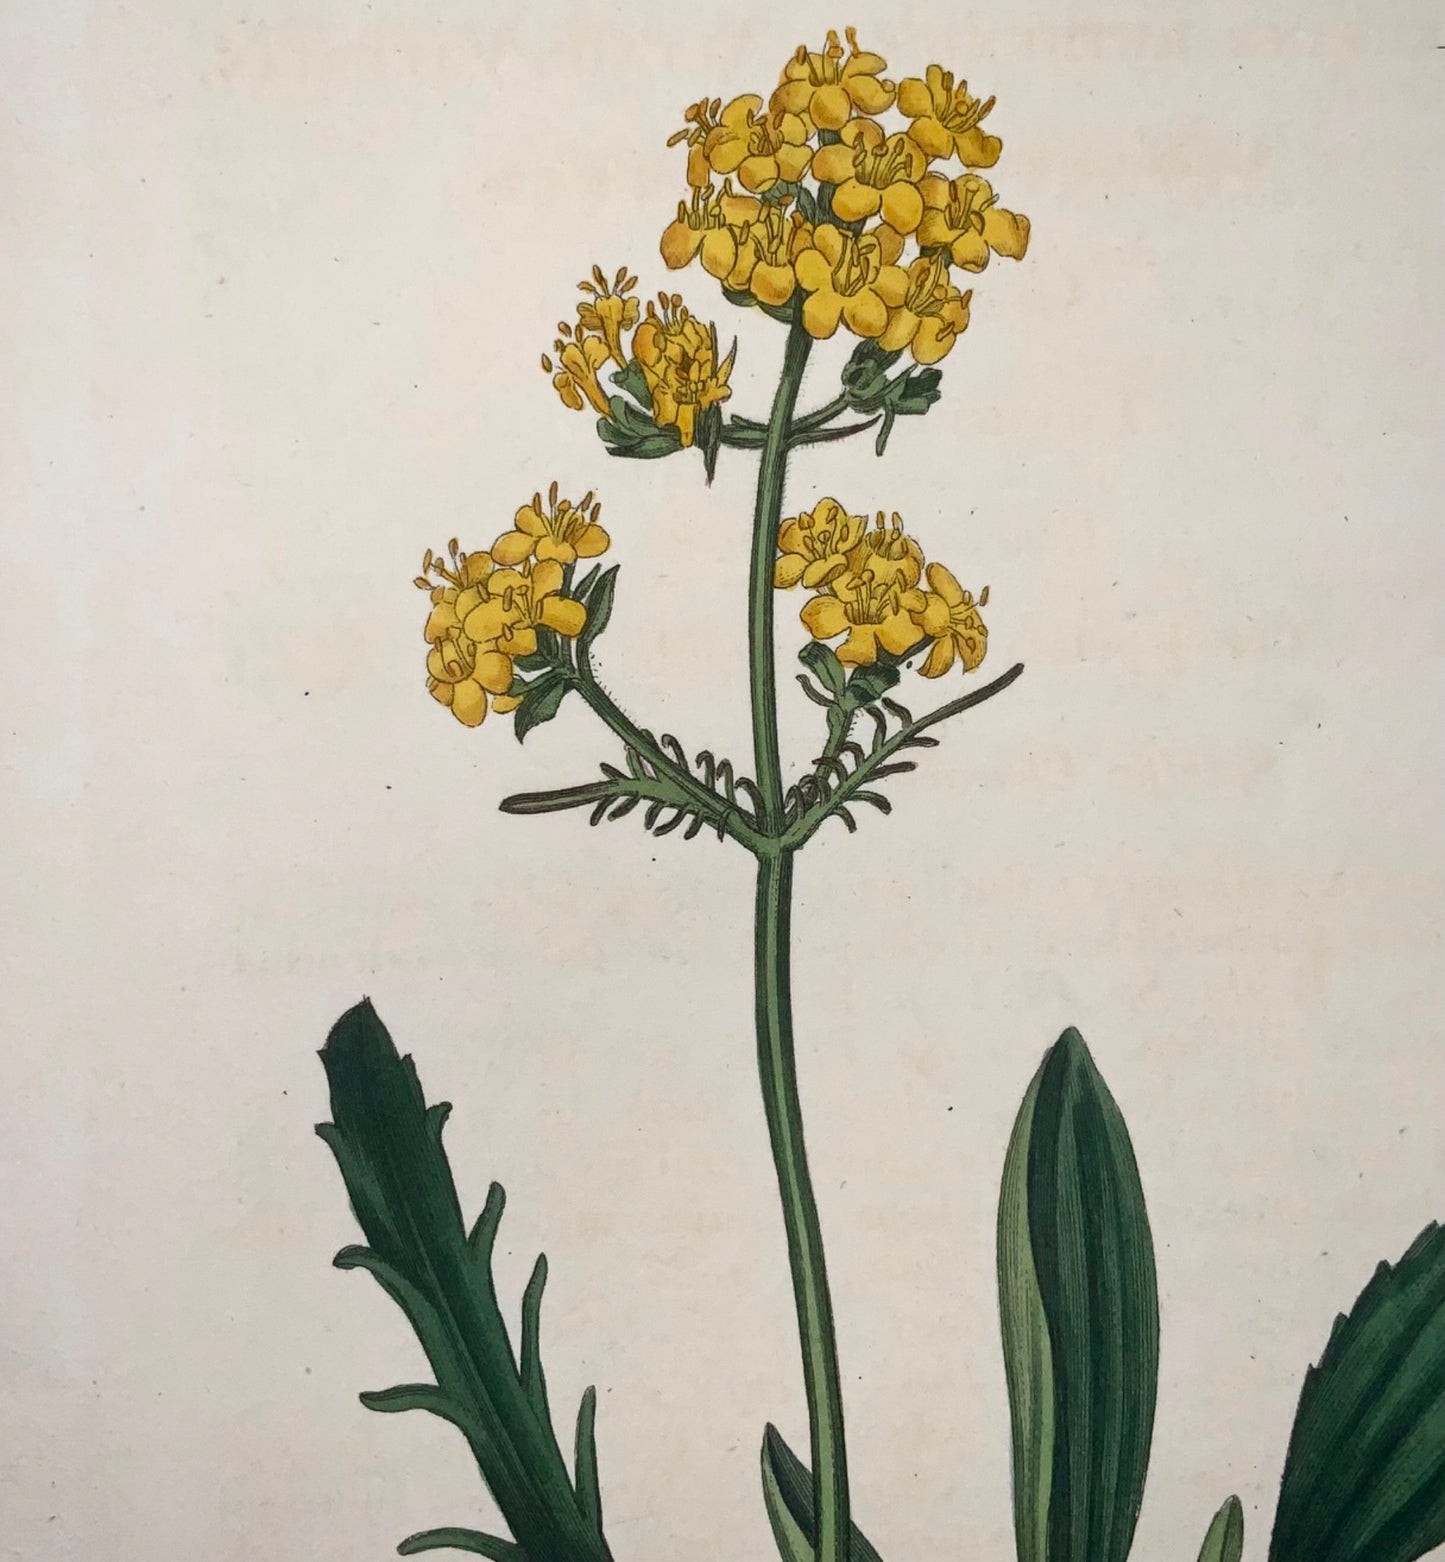 1822 Valériane jaune, botanique, Syd. Edwards, gravure coloriée à la main